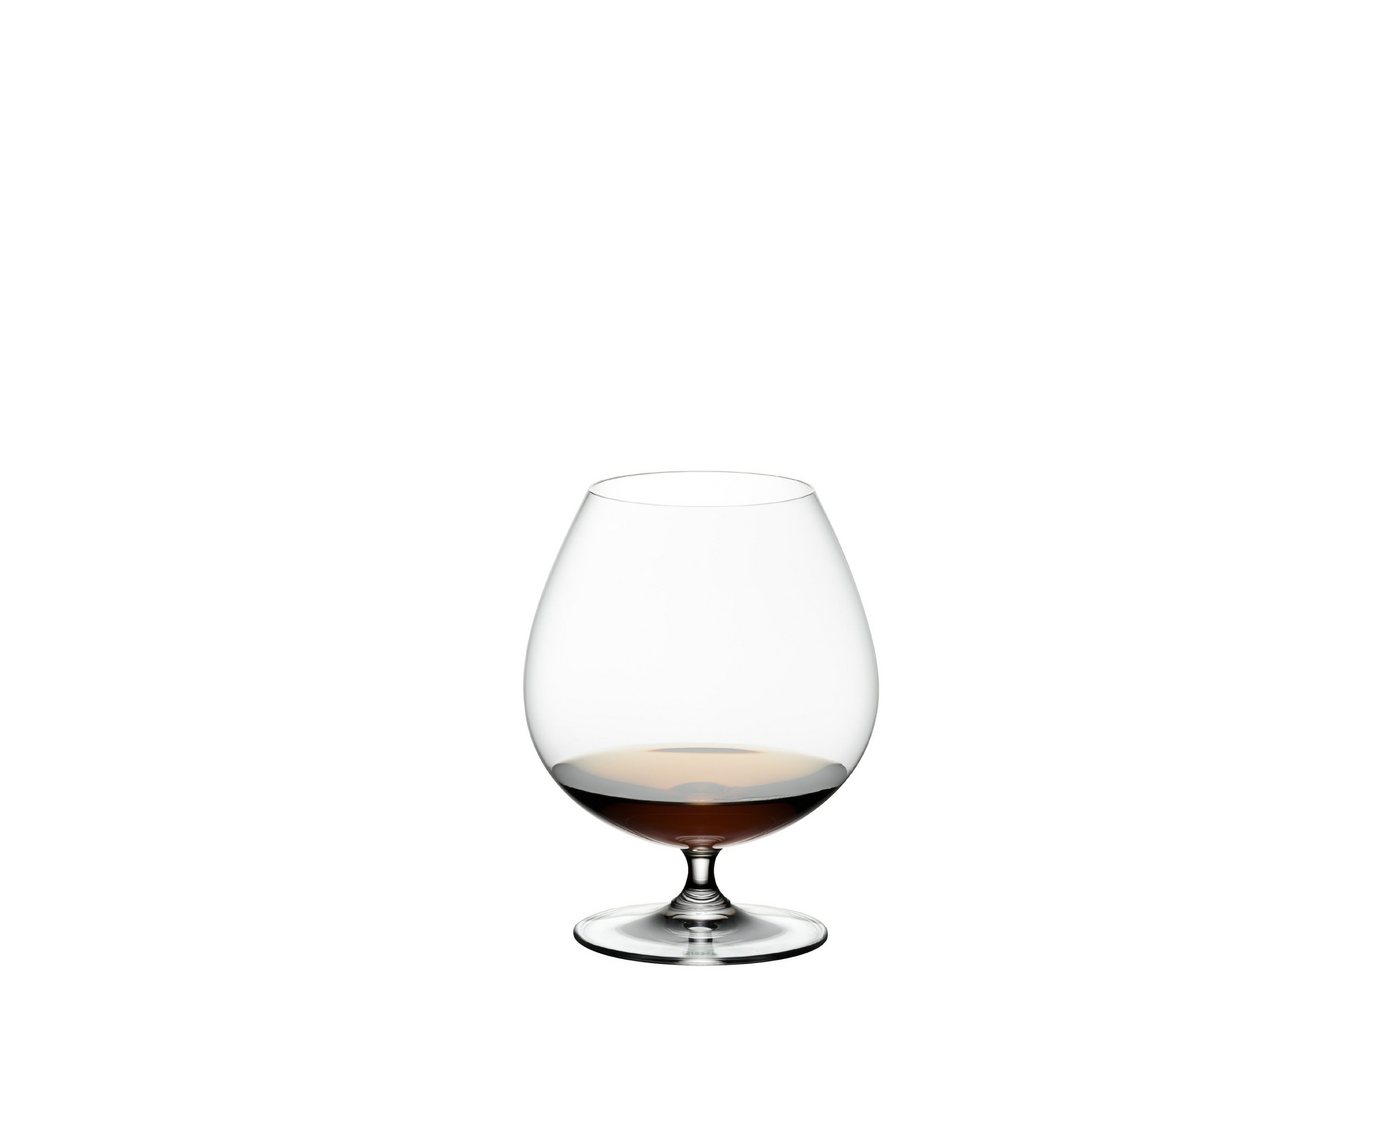 RIEDEL THE WINE GLASS COMPANY Glas Riedel Vinum Brandy 2er-Set 6416/18, Glas von RIEDEL THE WINE GLASS COMPANY